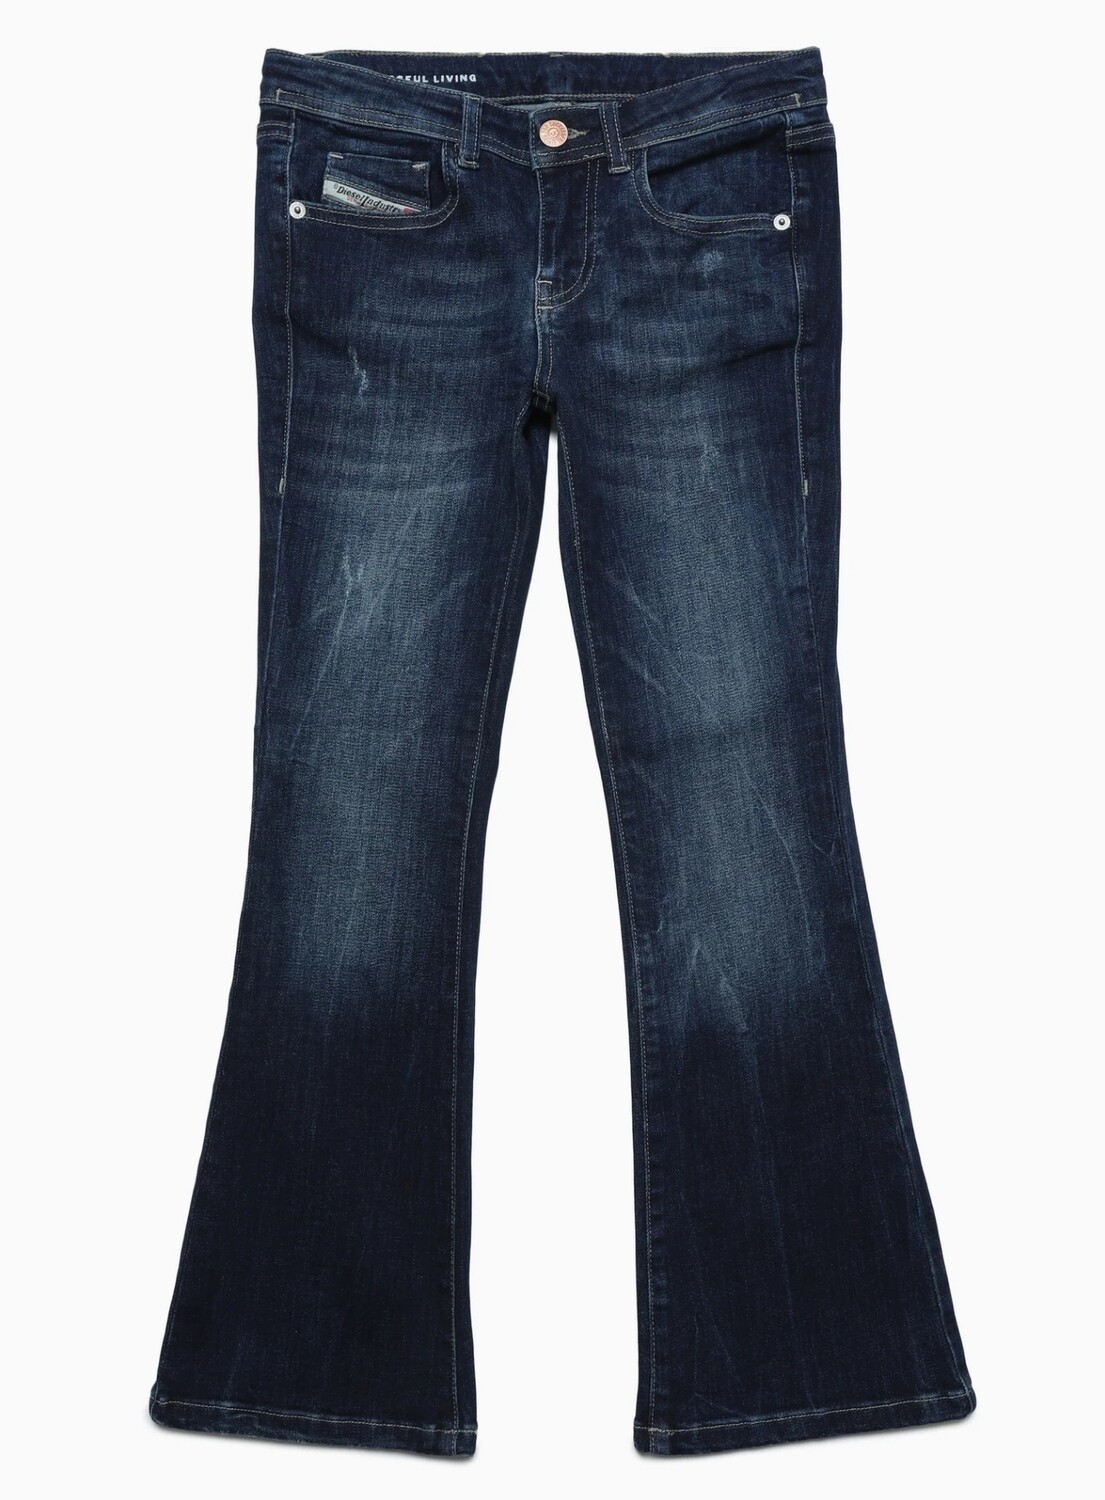 Pantalone jeans zampa Ebbey Diesel